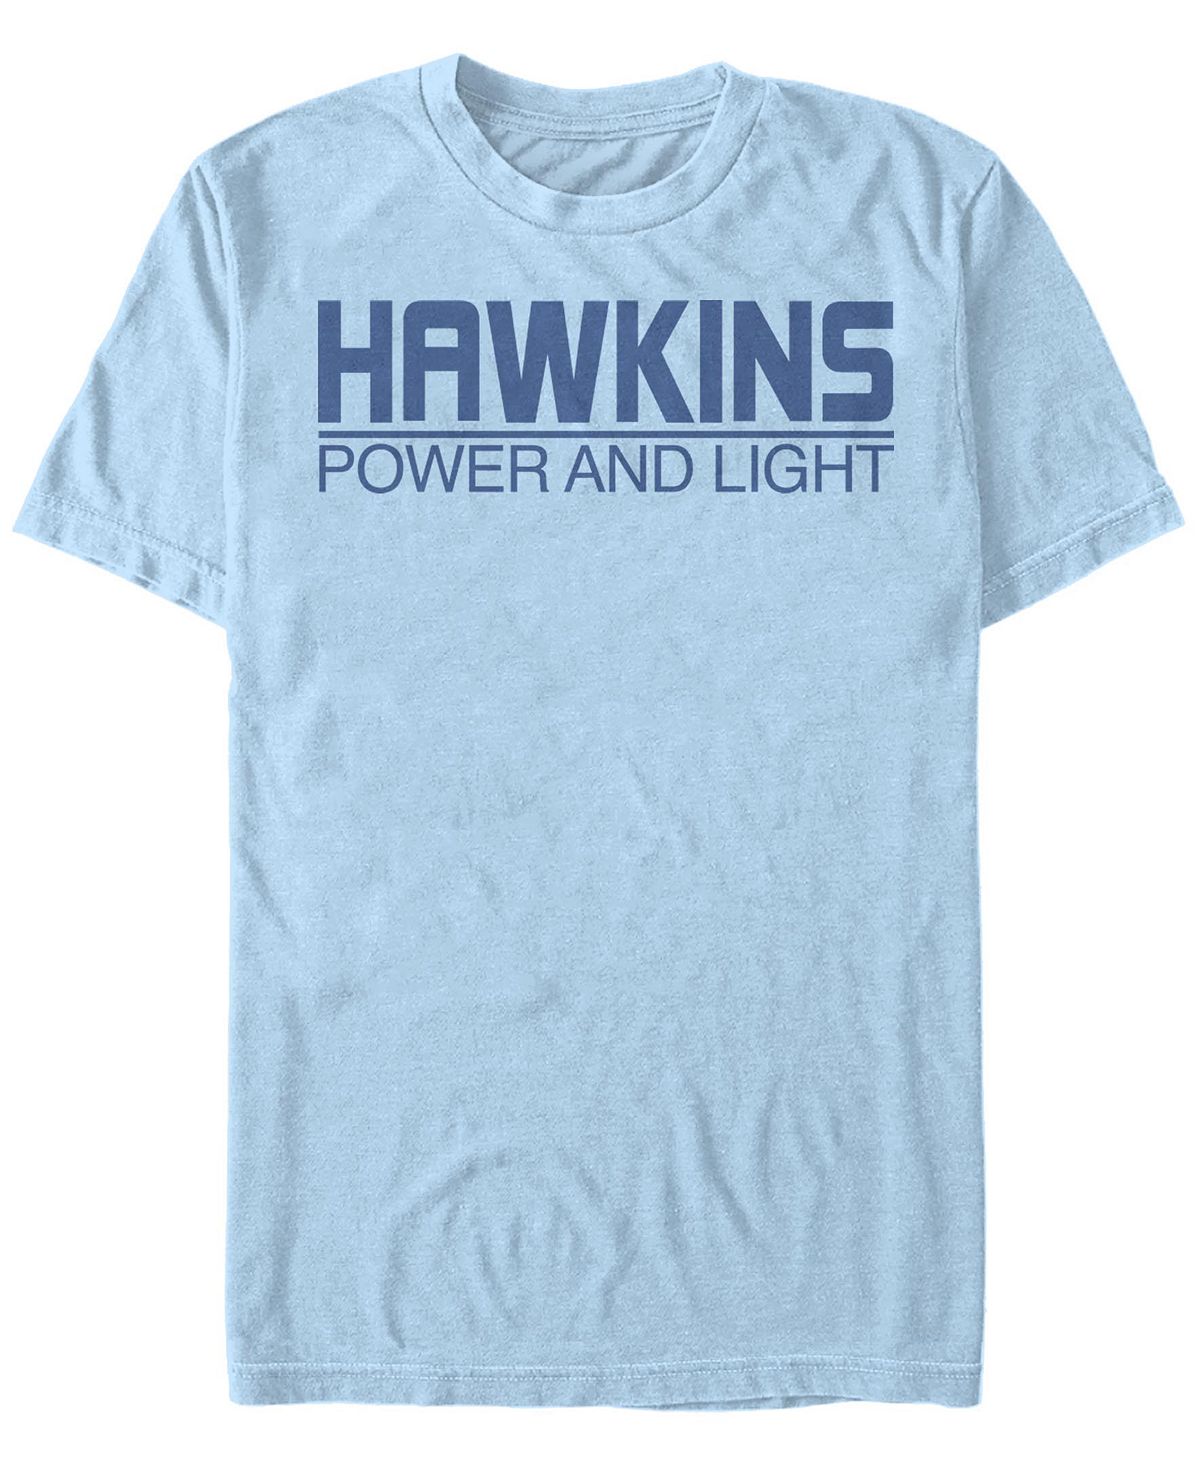 Мужская футболка с коротким рукавом с логотипом hawkins power and light stranger things Fifth Sun, светло-синий стать майком николсом